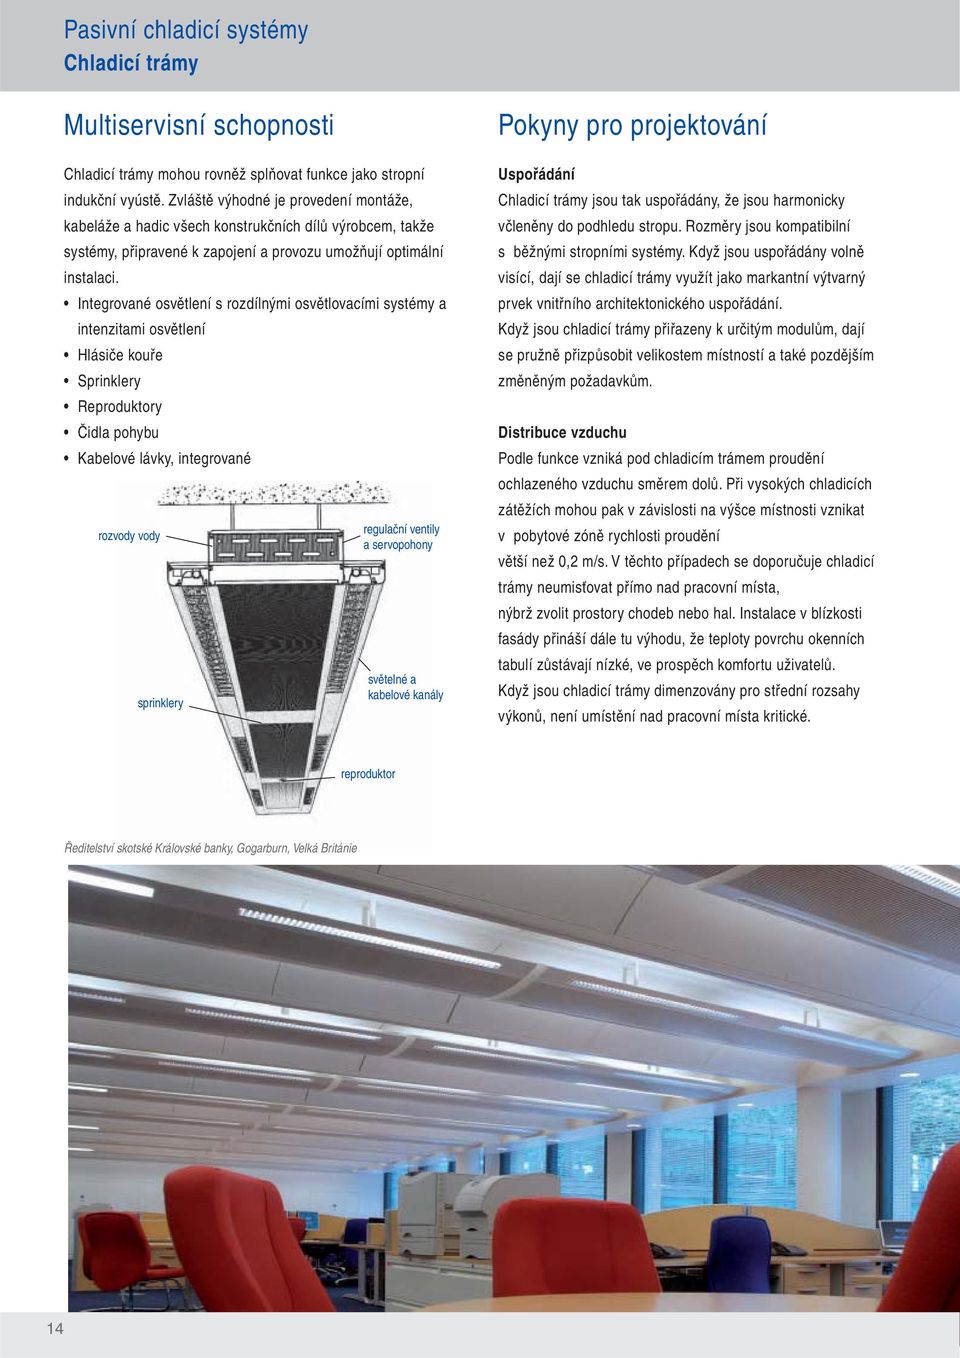 Integrované osvětlení s rozdílnými osvětlovacími systémy a intenzitami osvětlení Hlásiče kouře Sprinklery Reproduktory Čidla pohybu Kabelové lávky, integrované rozvody vody sprinklery regulační